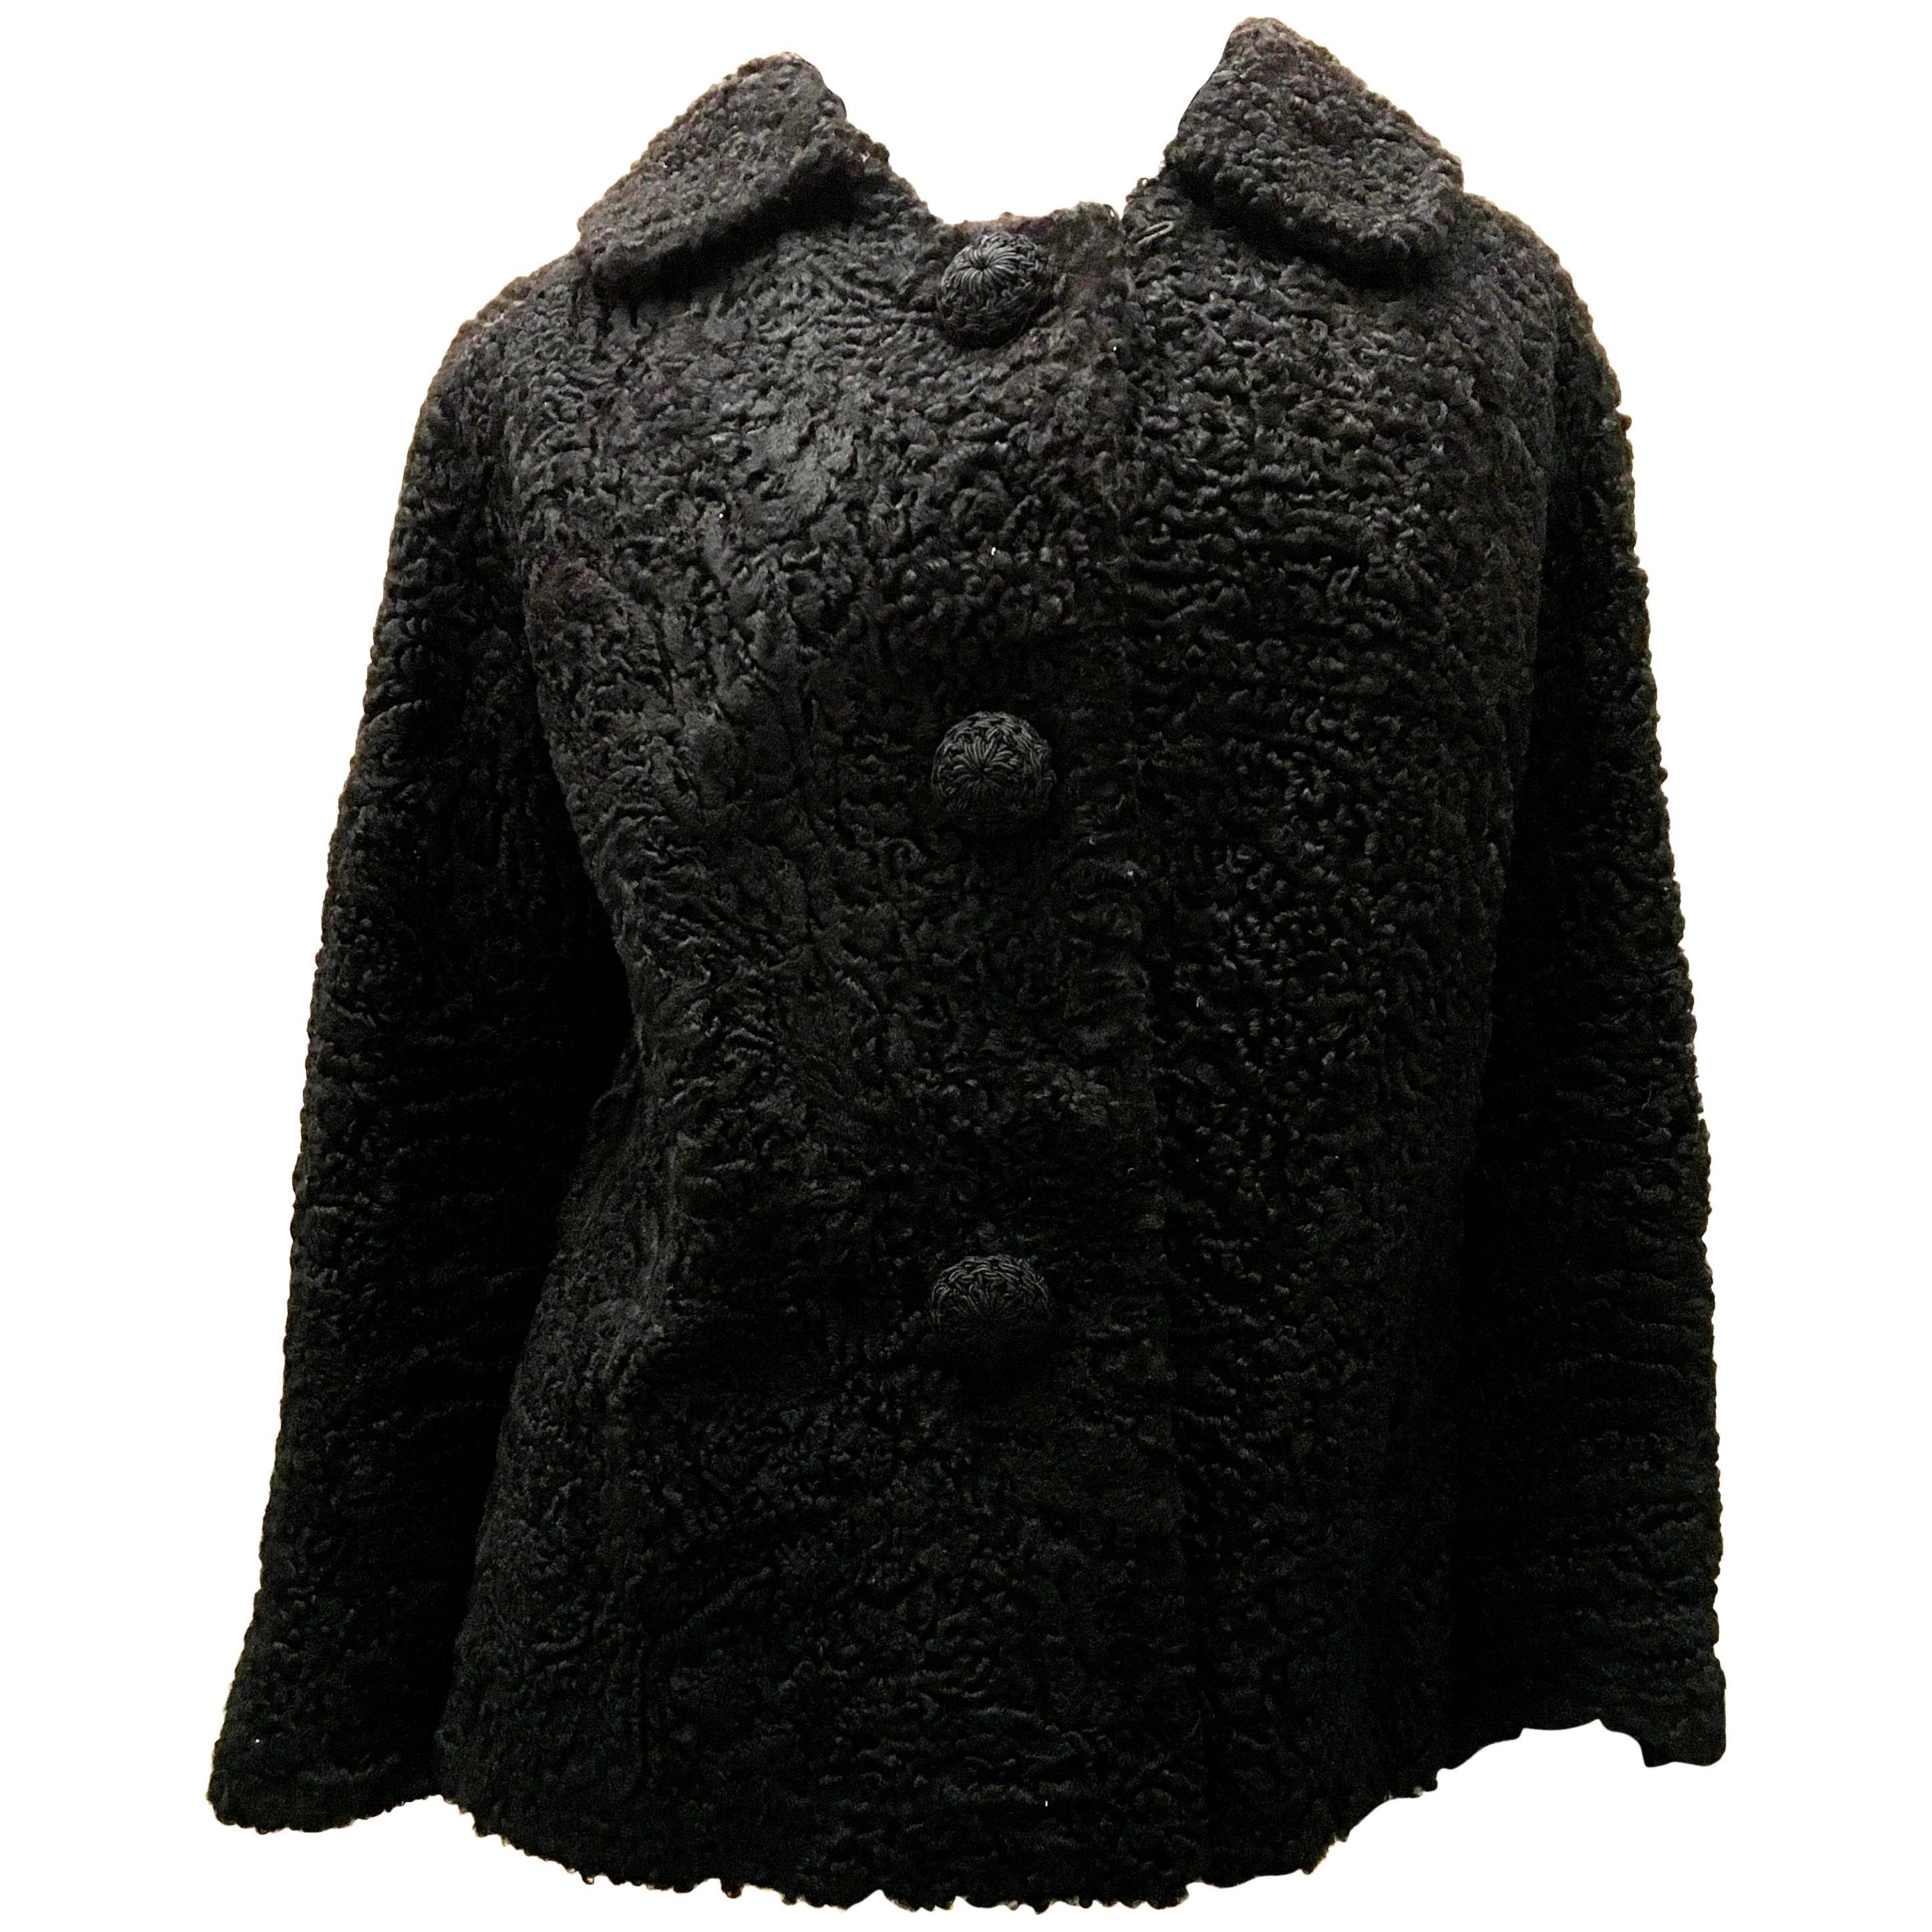 Persian Lamb Coat - Black For Sale